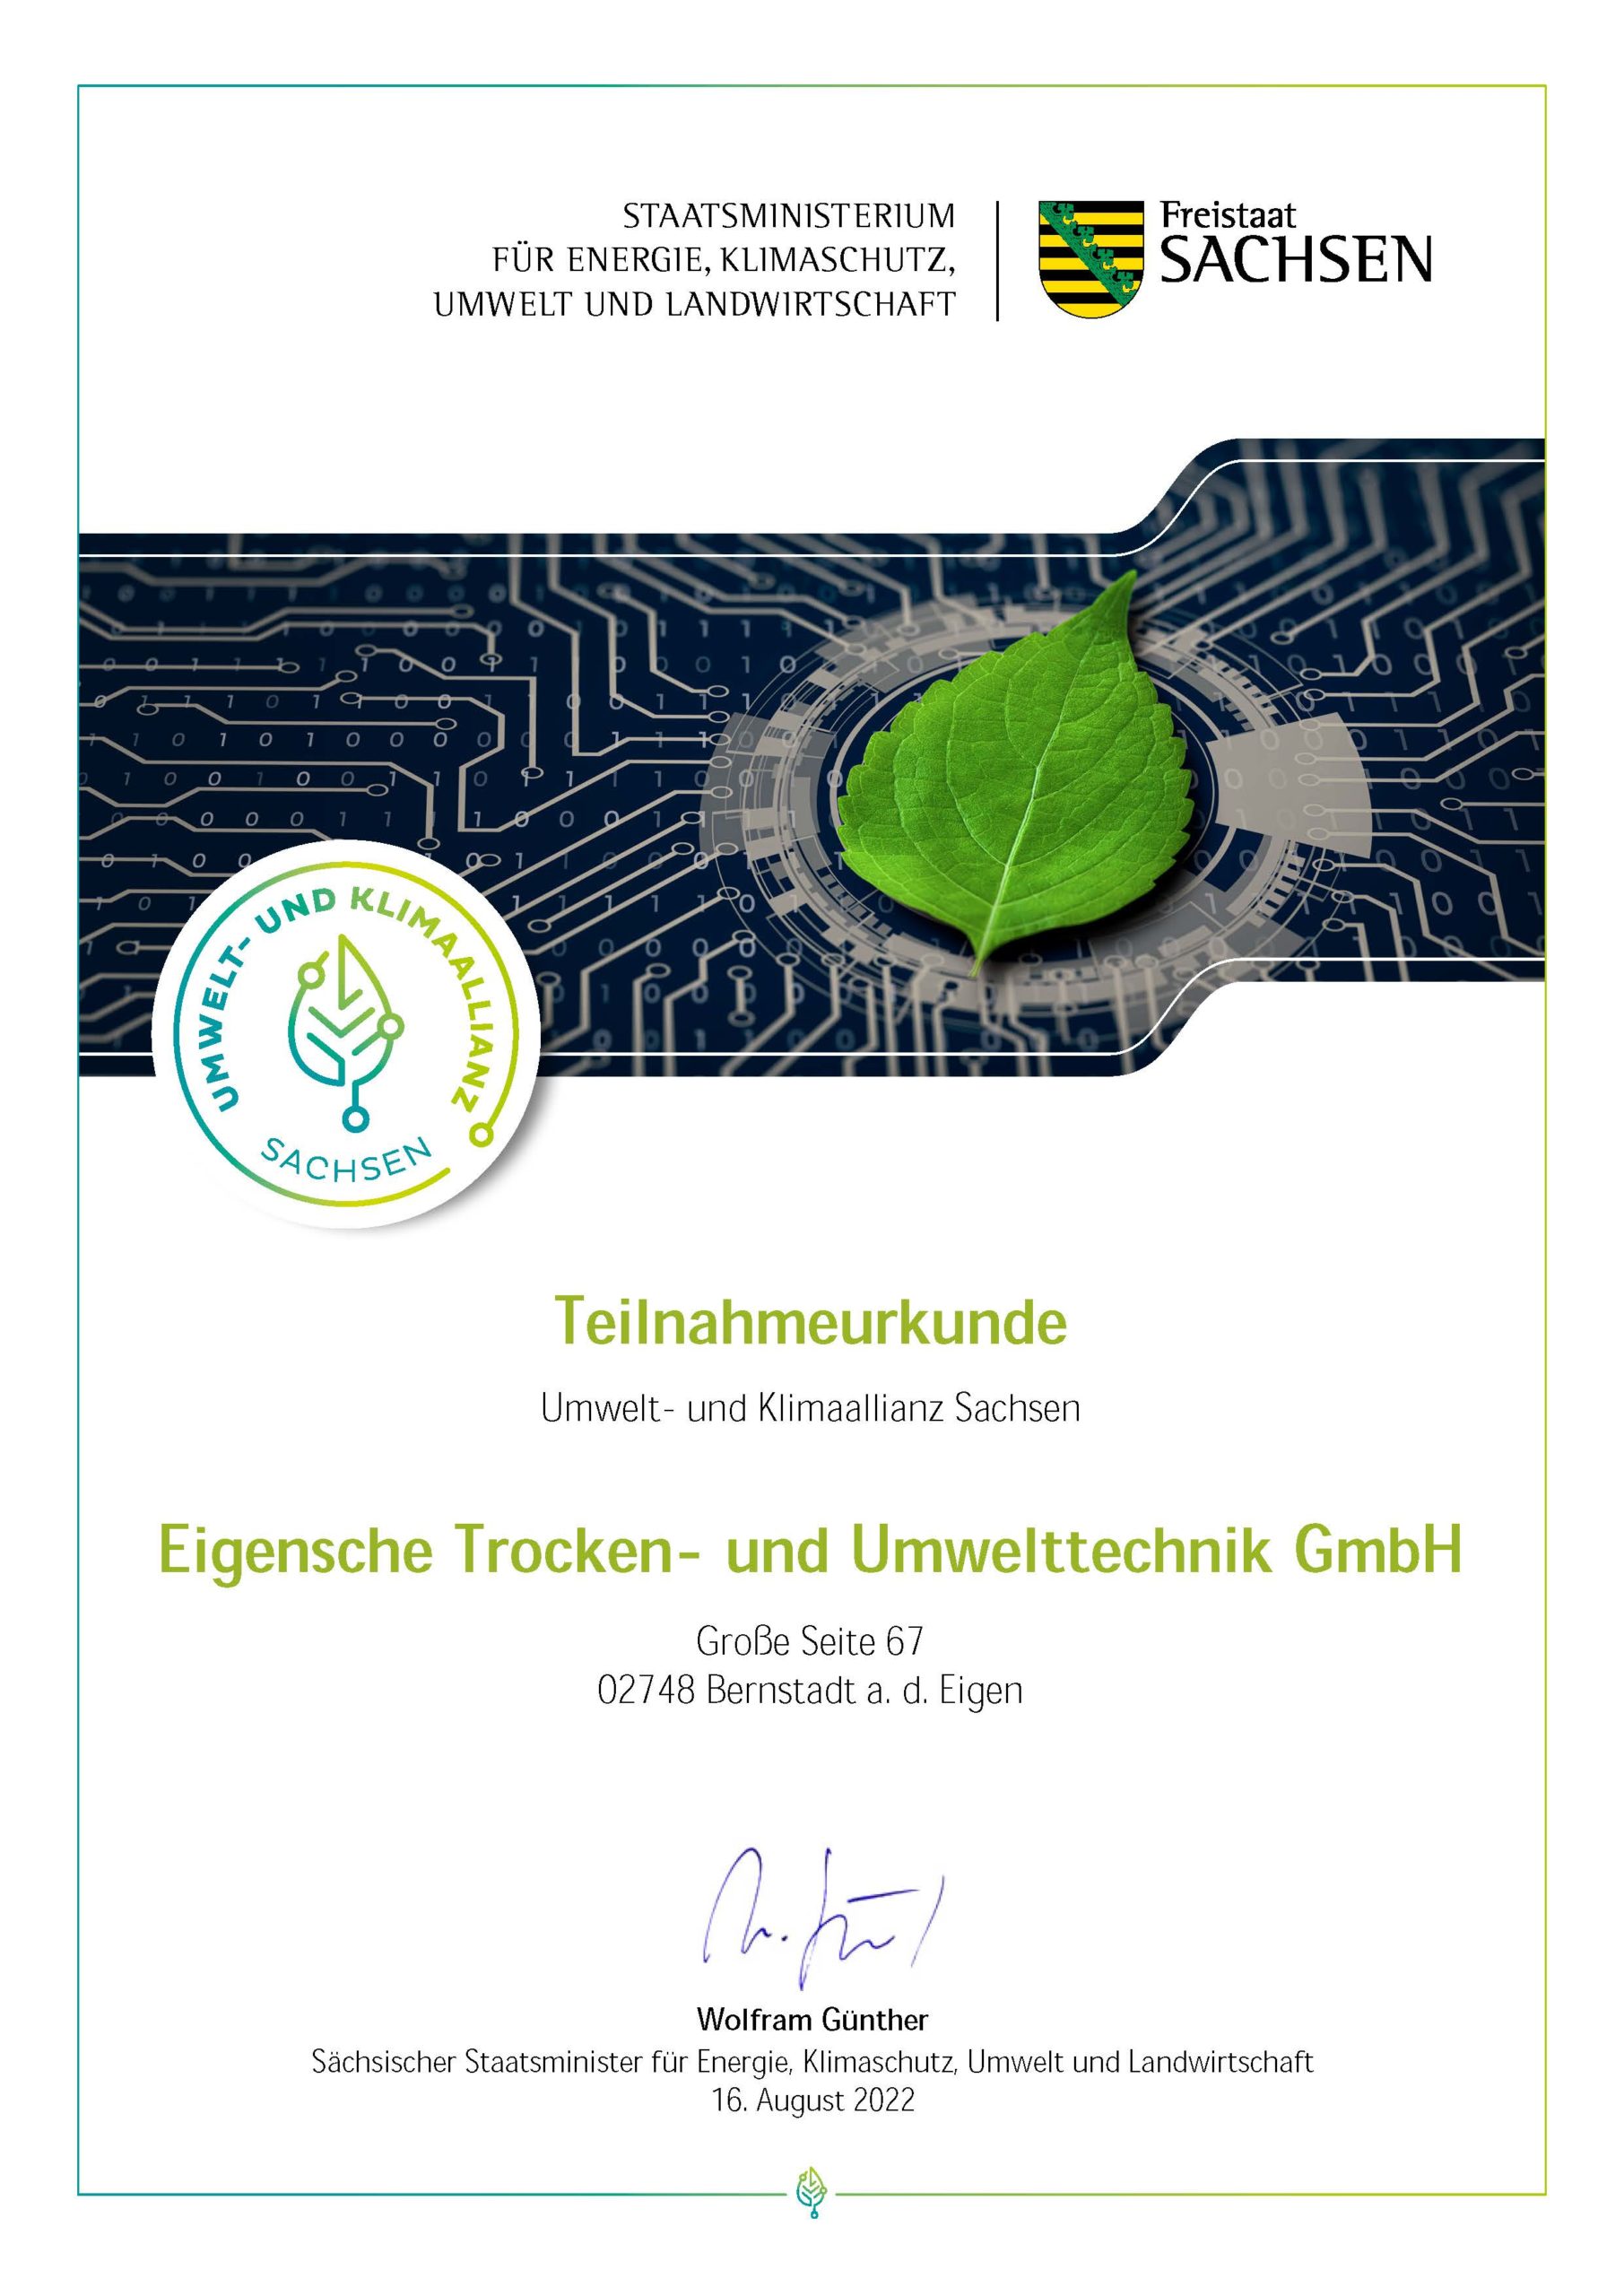 Eigensche Trocken- und Umwelttechnik GmbH Urkunde Umwelt- und Klimaallianz Sachsen